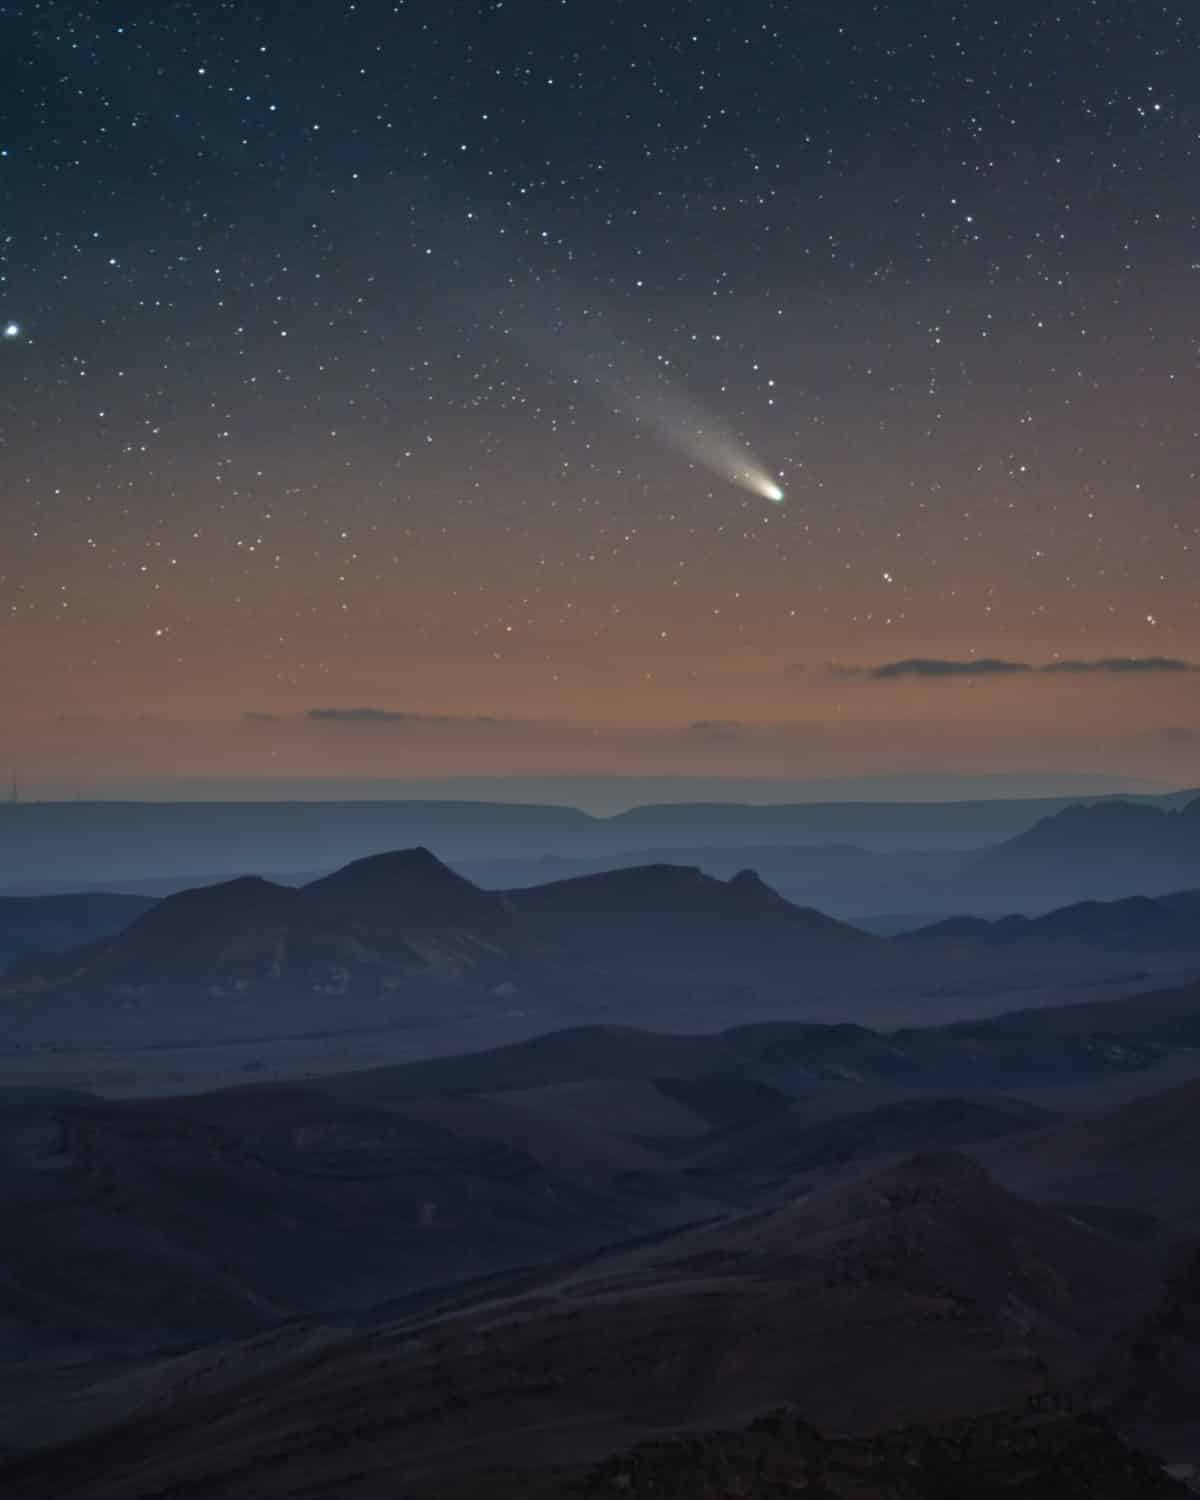 C/2021 A1 (Cometa Leonard) capturado sobre el desierto de Negev, Israel